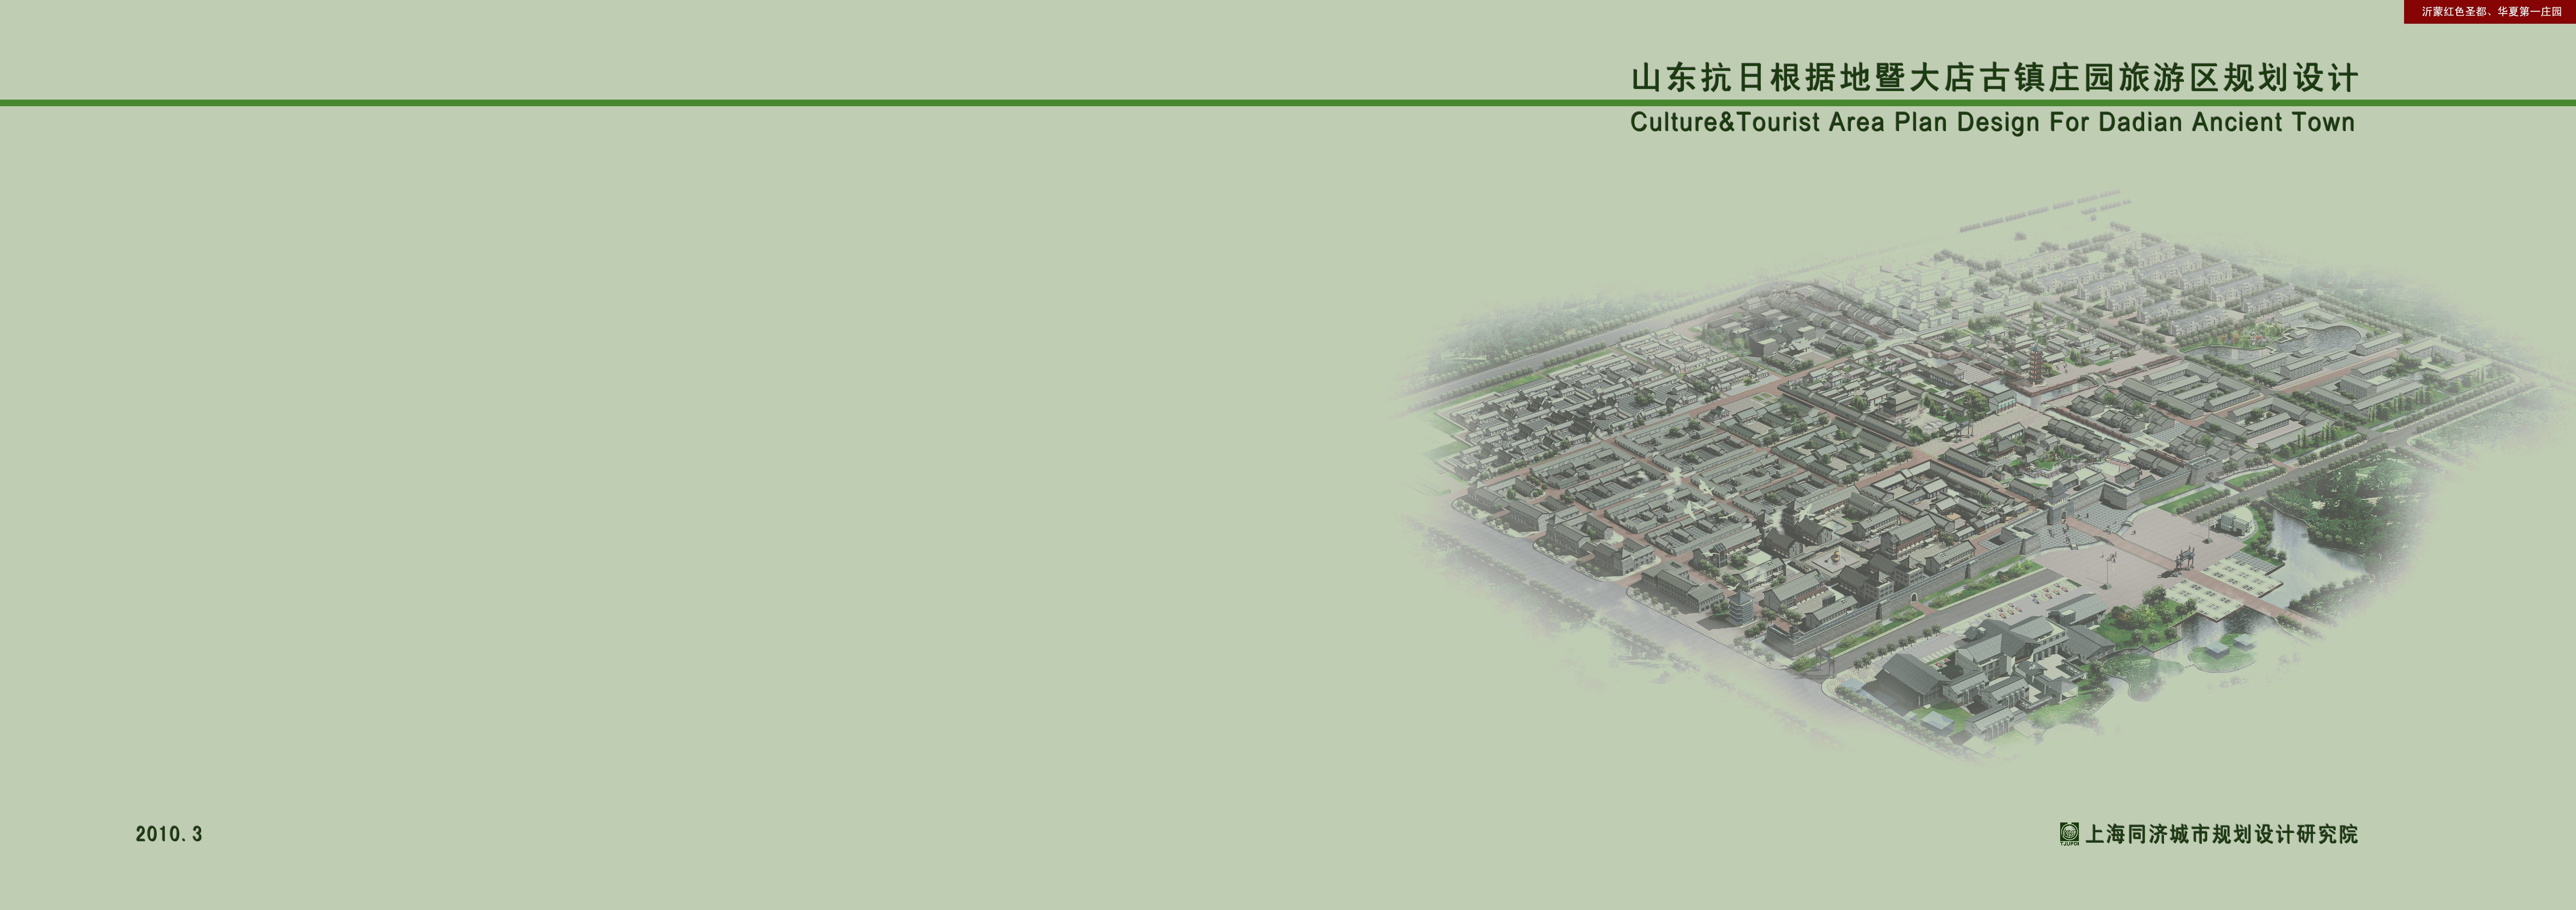 [山东]古镇庄园旅游区景观规划设计方案